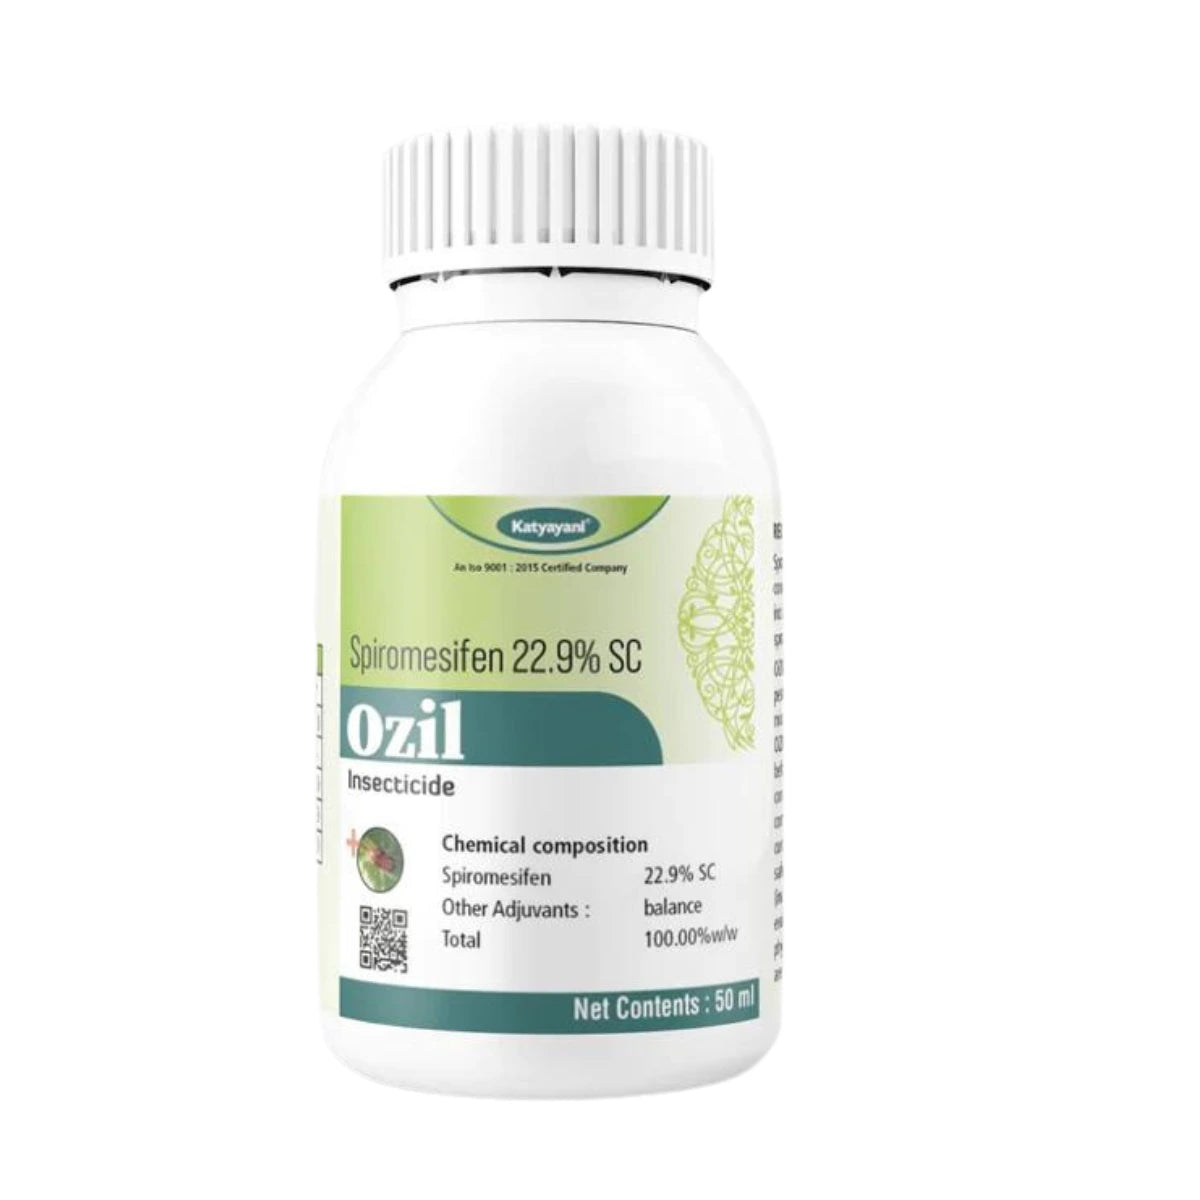 कात्यायनी ओज़िल (स्पाइरोमेसिफेन 22.9% एससी) 